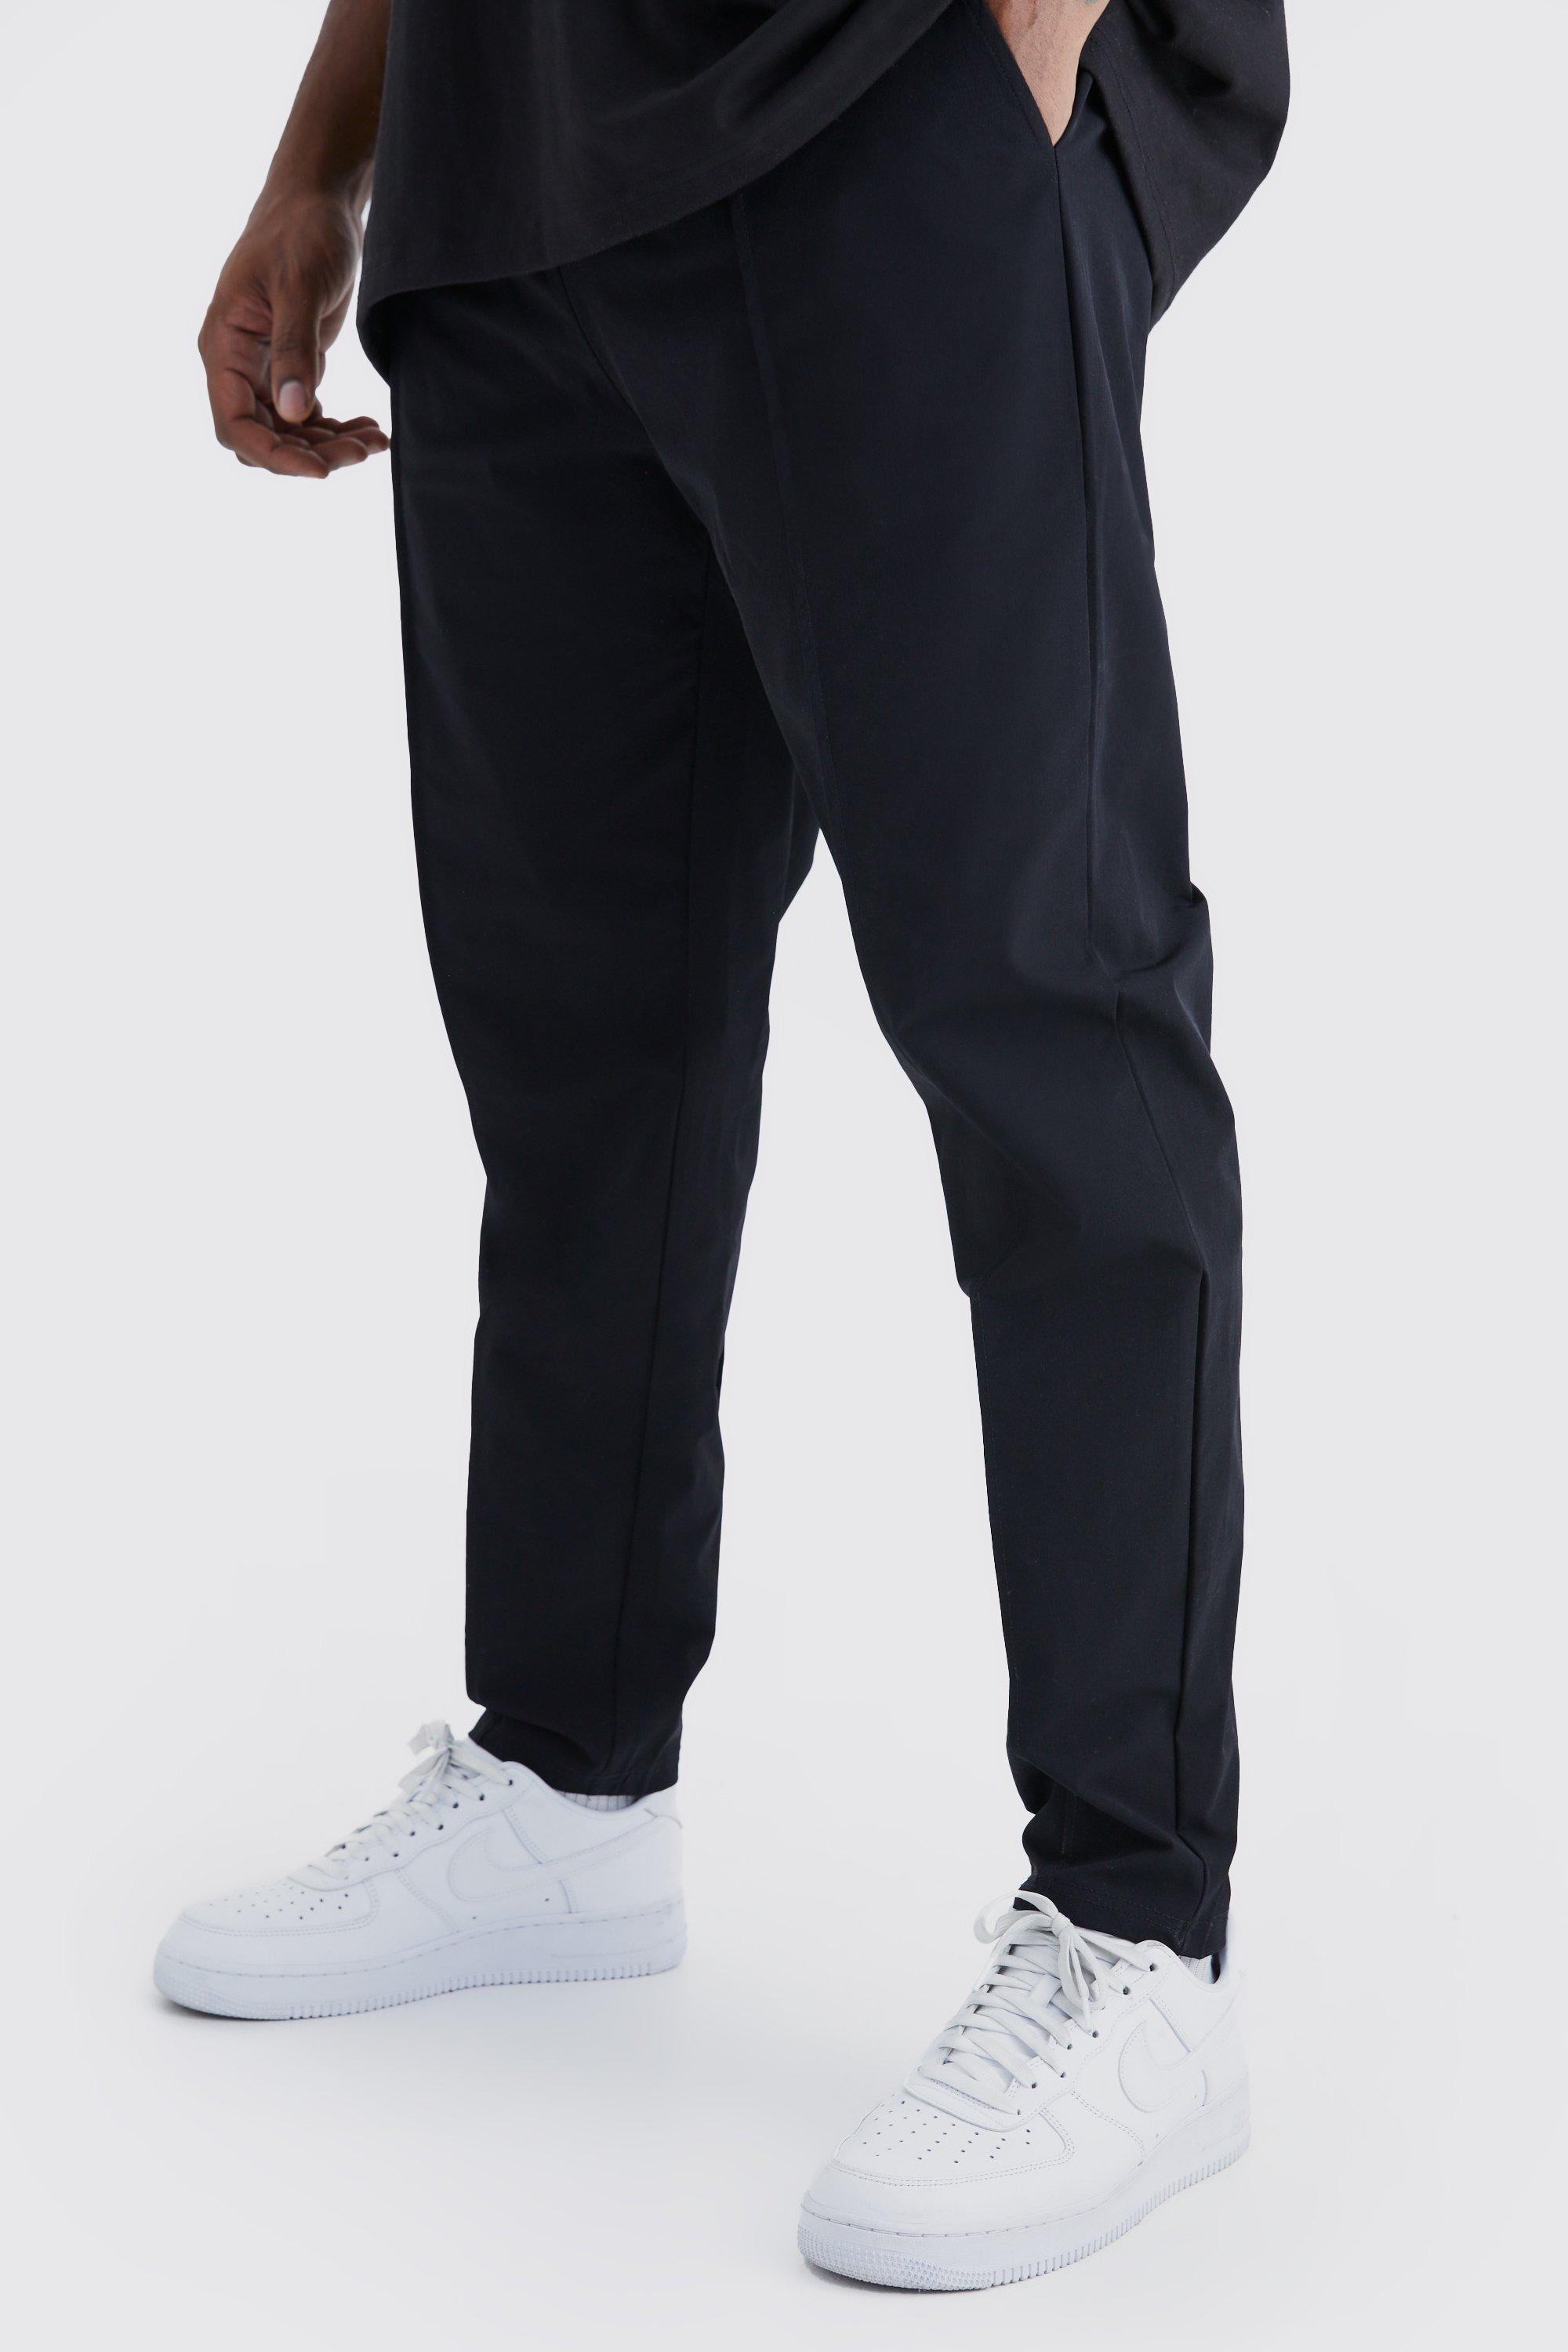 Image of Pantaloni Plus Size in Stretch leggero elasticizzato con nervature, Nero